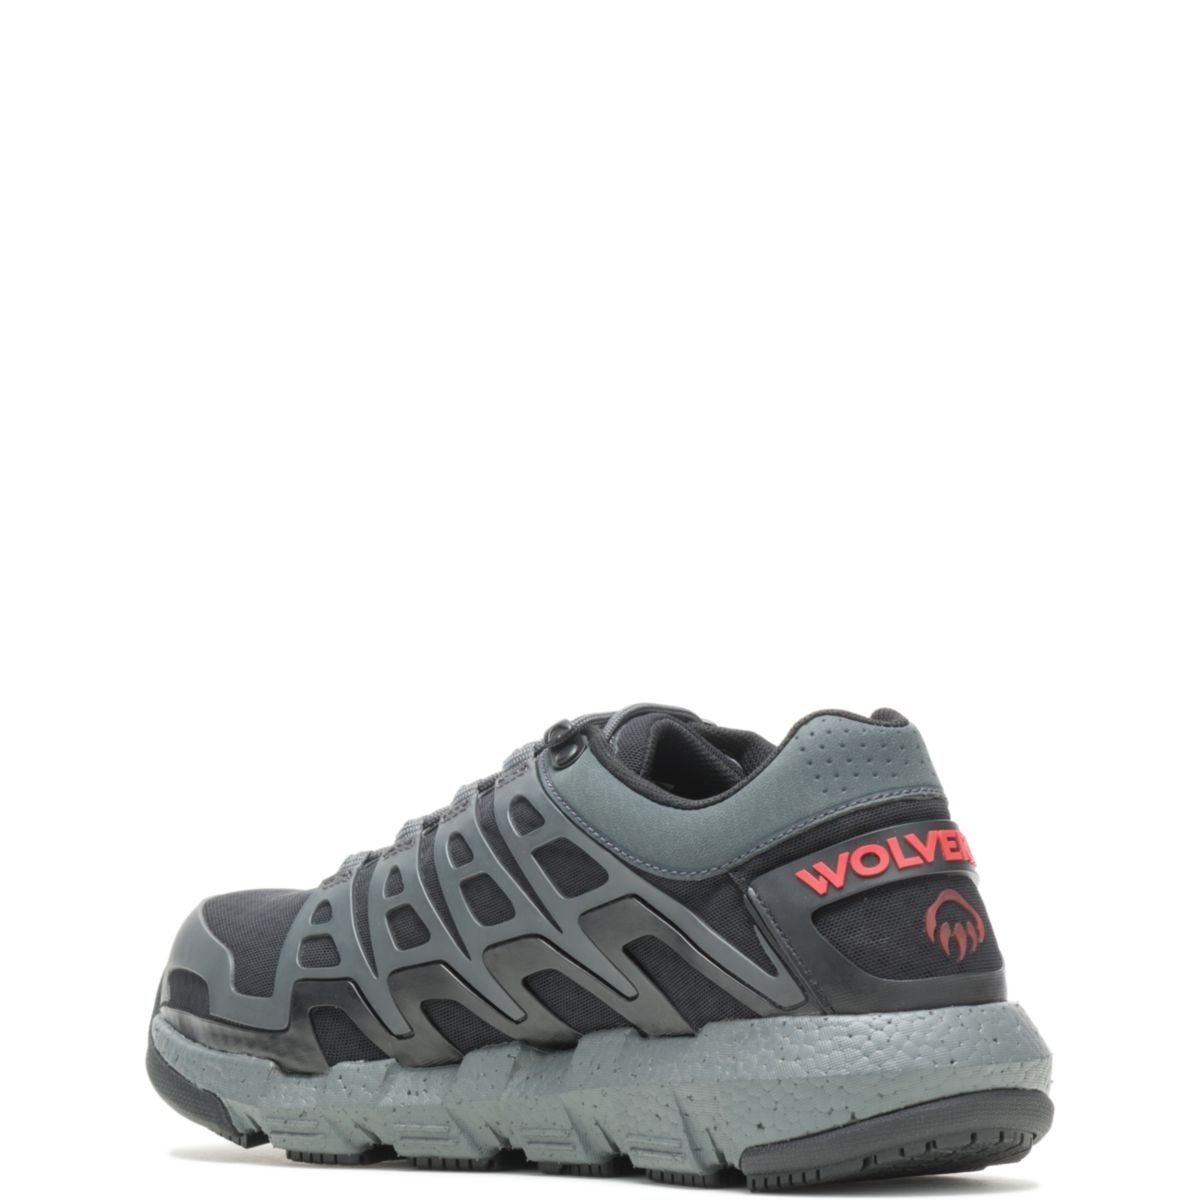 WOLVERINE Men's Rev Vent UltraSpringâ¢ DuraShocksÂ® CarbonMAXÂ® Composite Toe Work Shoe Charcoal - W211016 CHARCOAL - CHARCOAL, 11.5